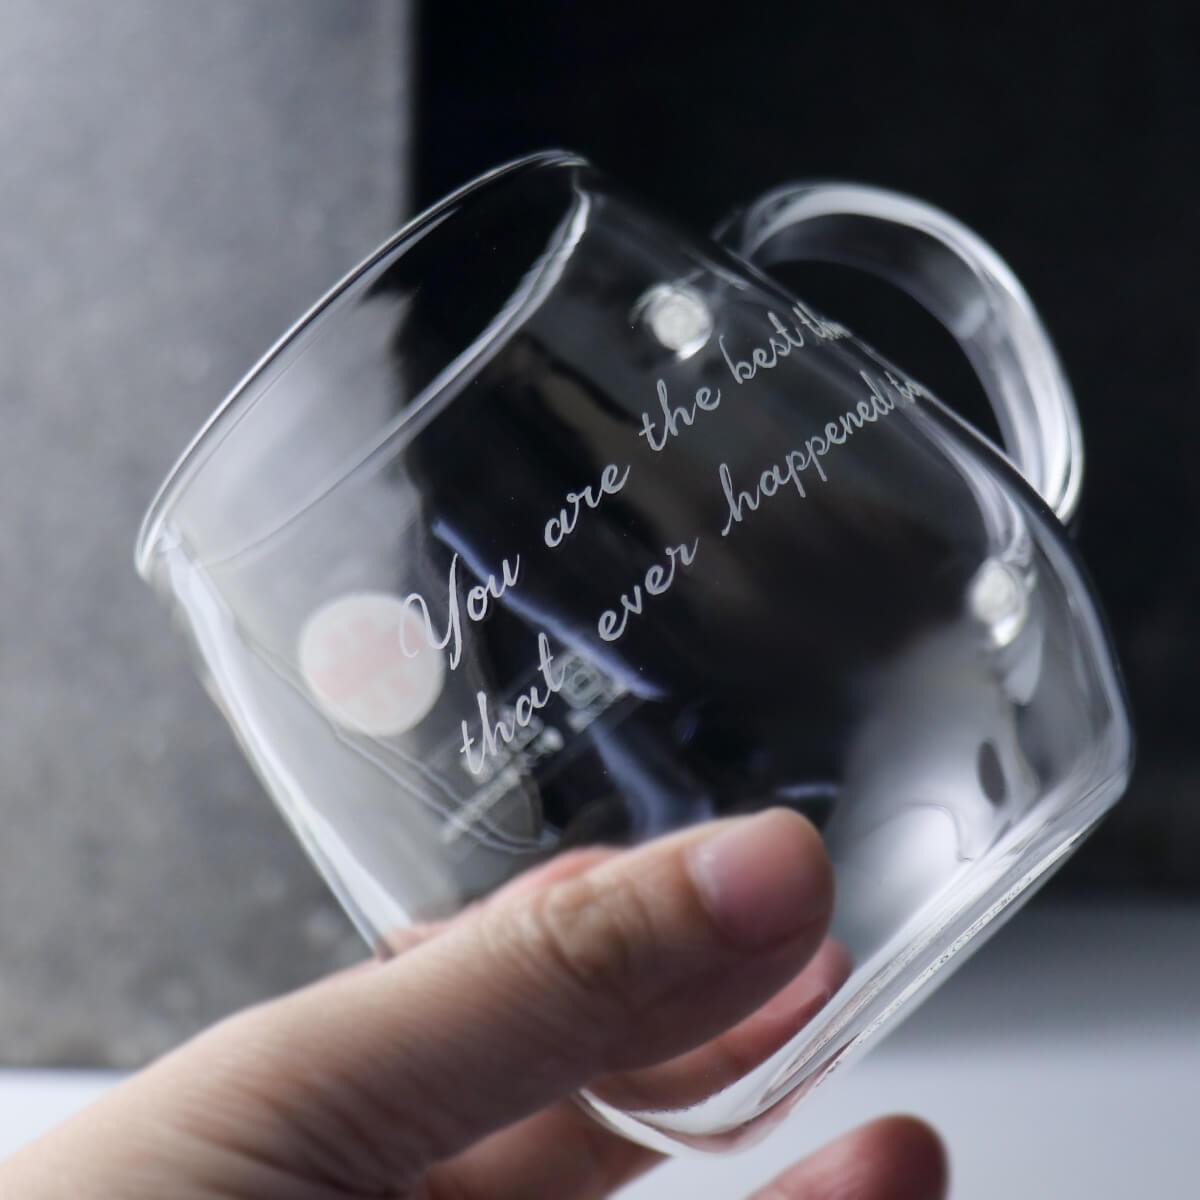 360cc【圓圓耐熱杯】日本HARIO刻字耐熱馬克杯 超輕薄 - MSA玻璃雕刻